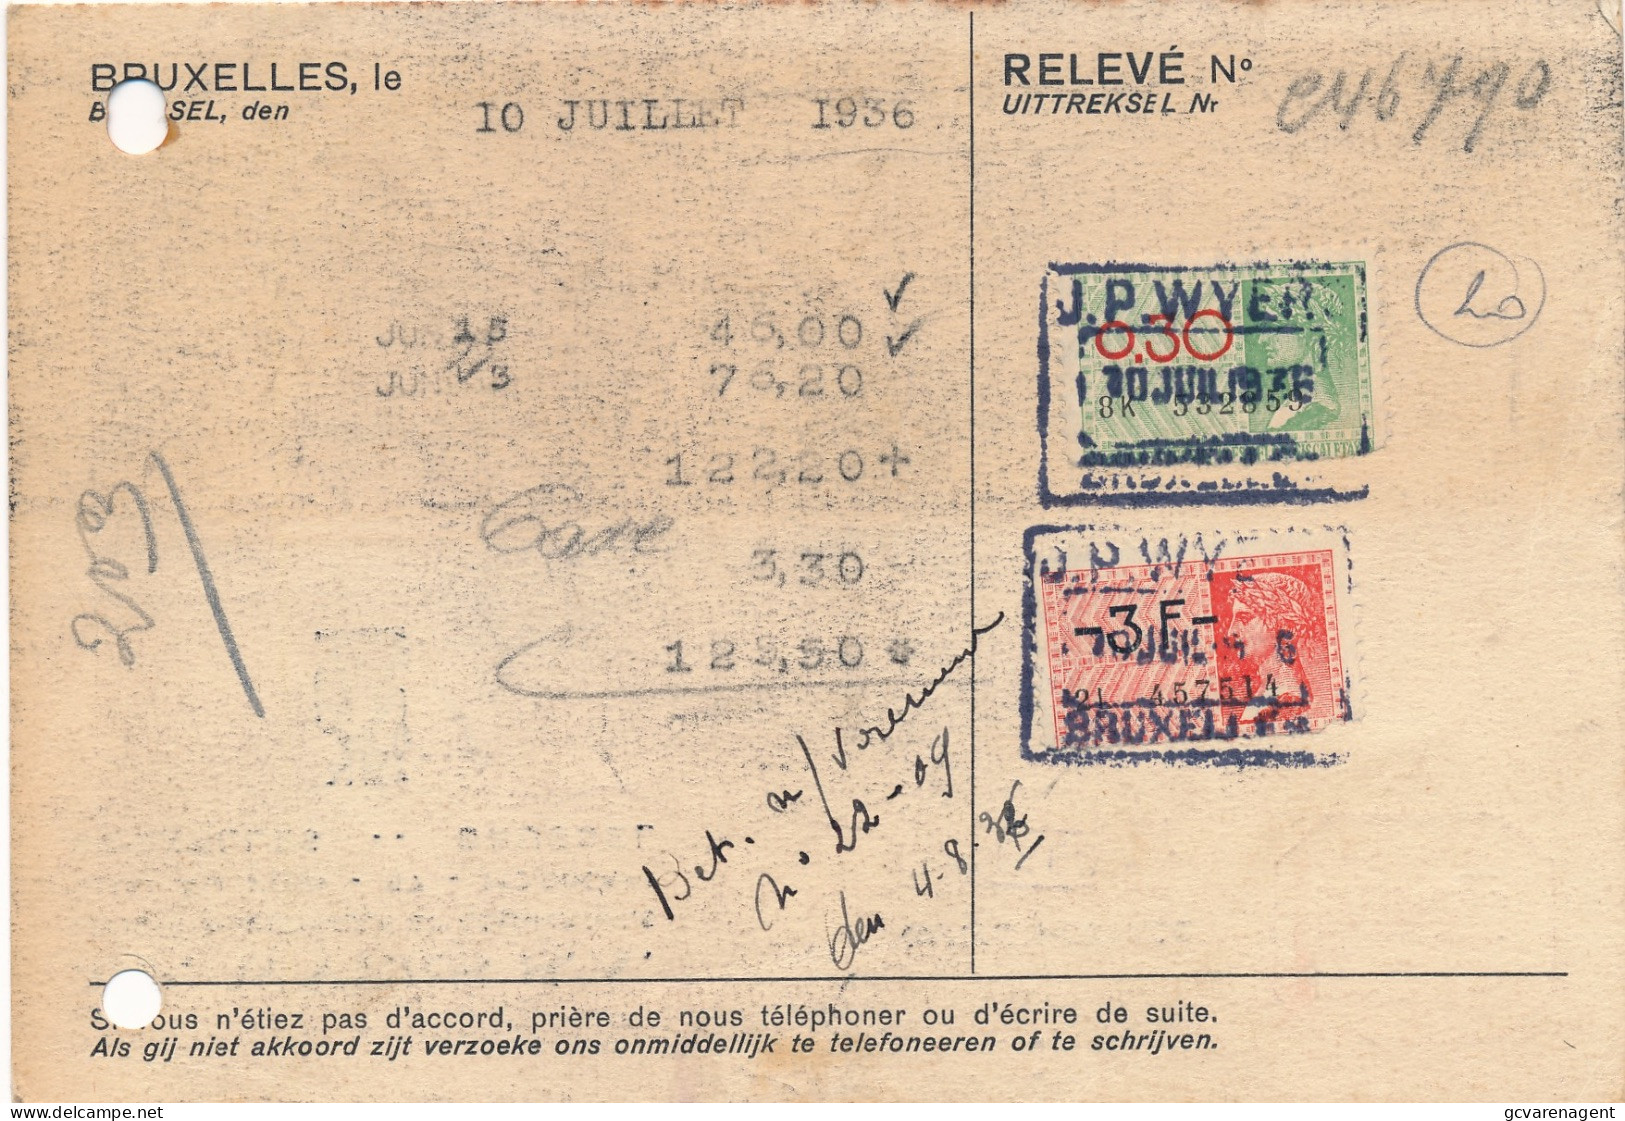 BRUXELLES  BEDRIJFSKAART  2 ZEGELS 0.30 EN 3 FR  RELEVE  1936  2 AFBEELDINGEN - Dokumente